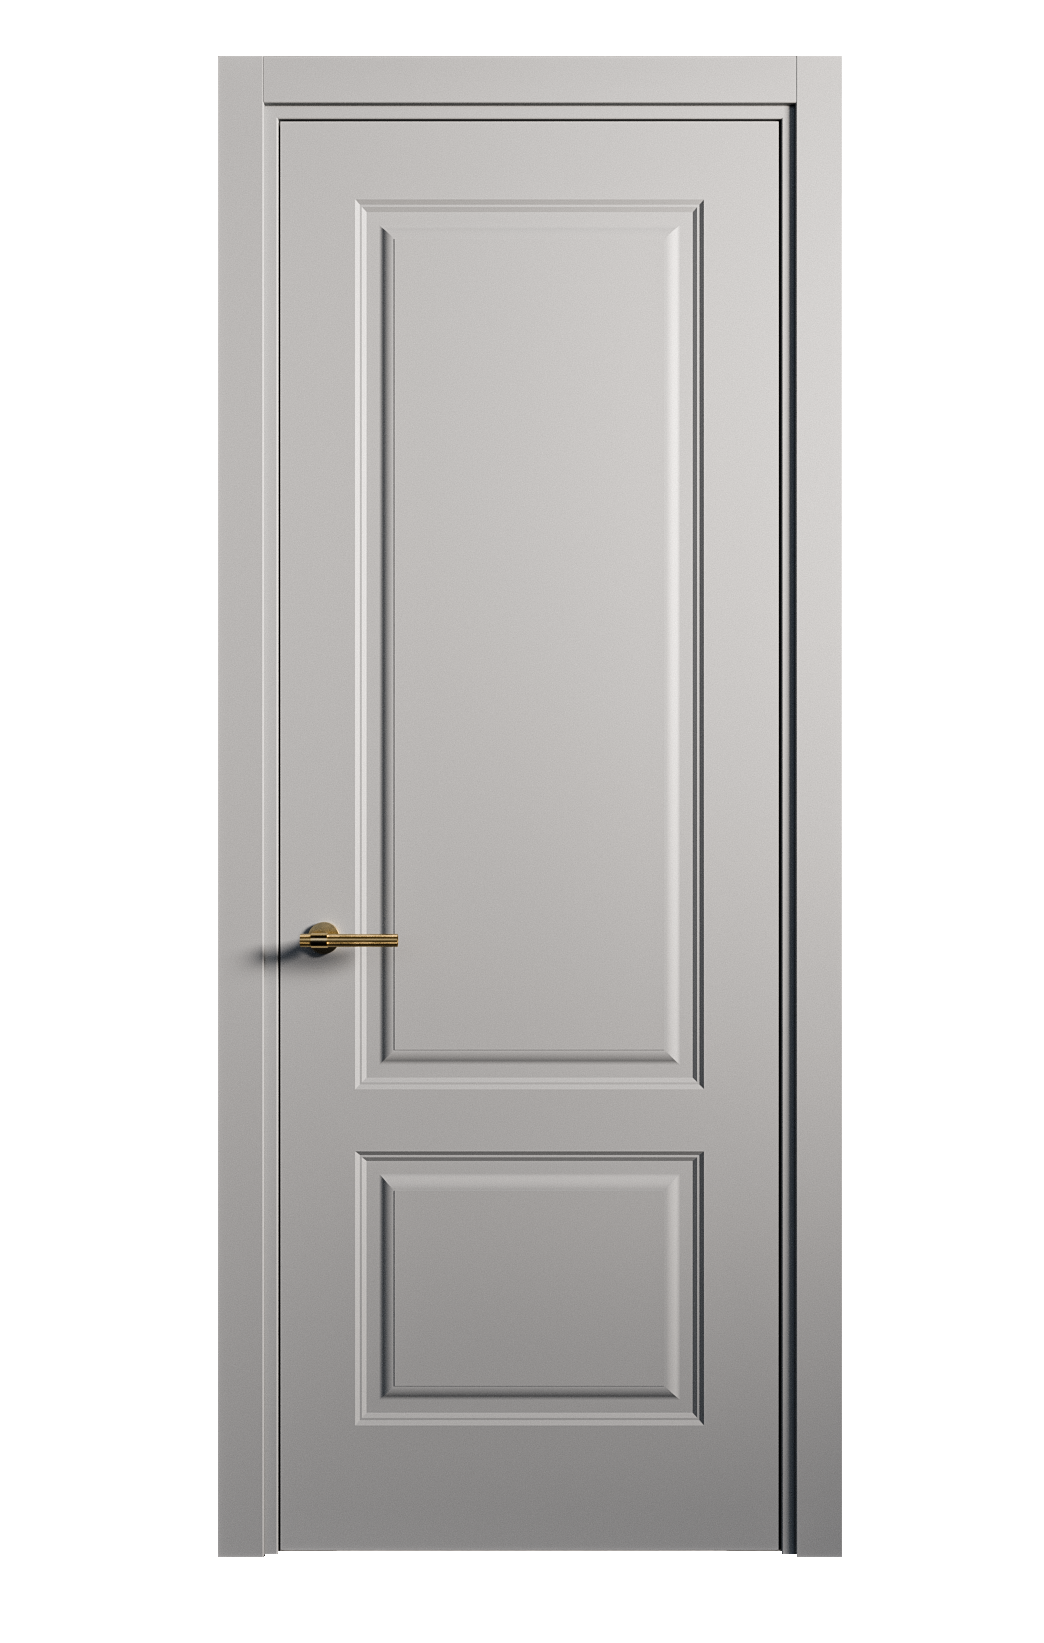 Межкомнатная дверь Вита-1 глухая эмаль ral 7040 26268